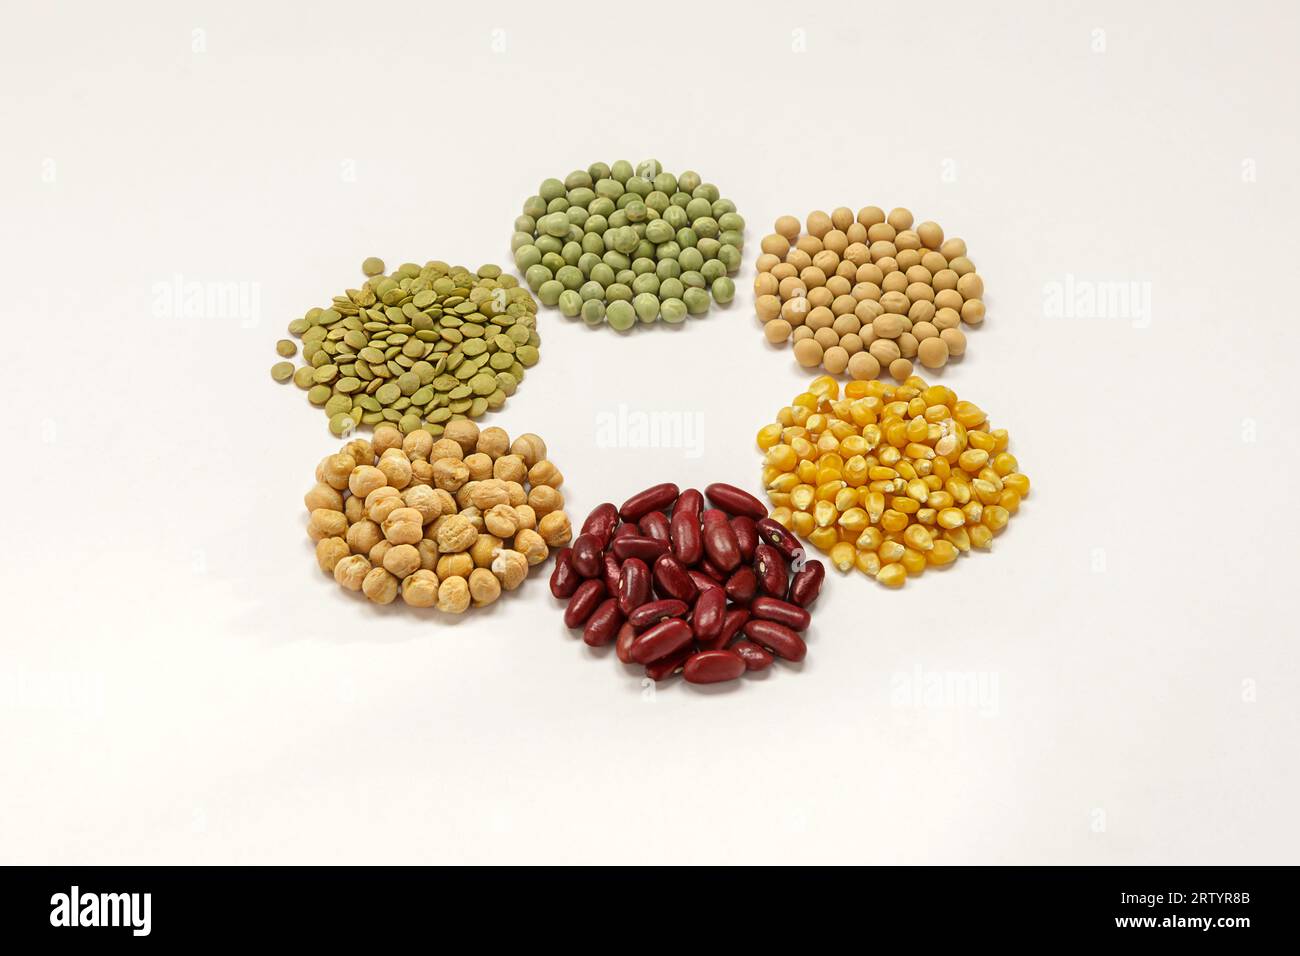 Granos secos típicos de América latina, lentejas, arvejas verdes, arvejas secas, maíz, frijol rojo, garbanzos sobre fondo blanco - Typical Latin meal Stock Photo